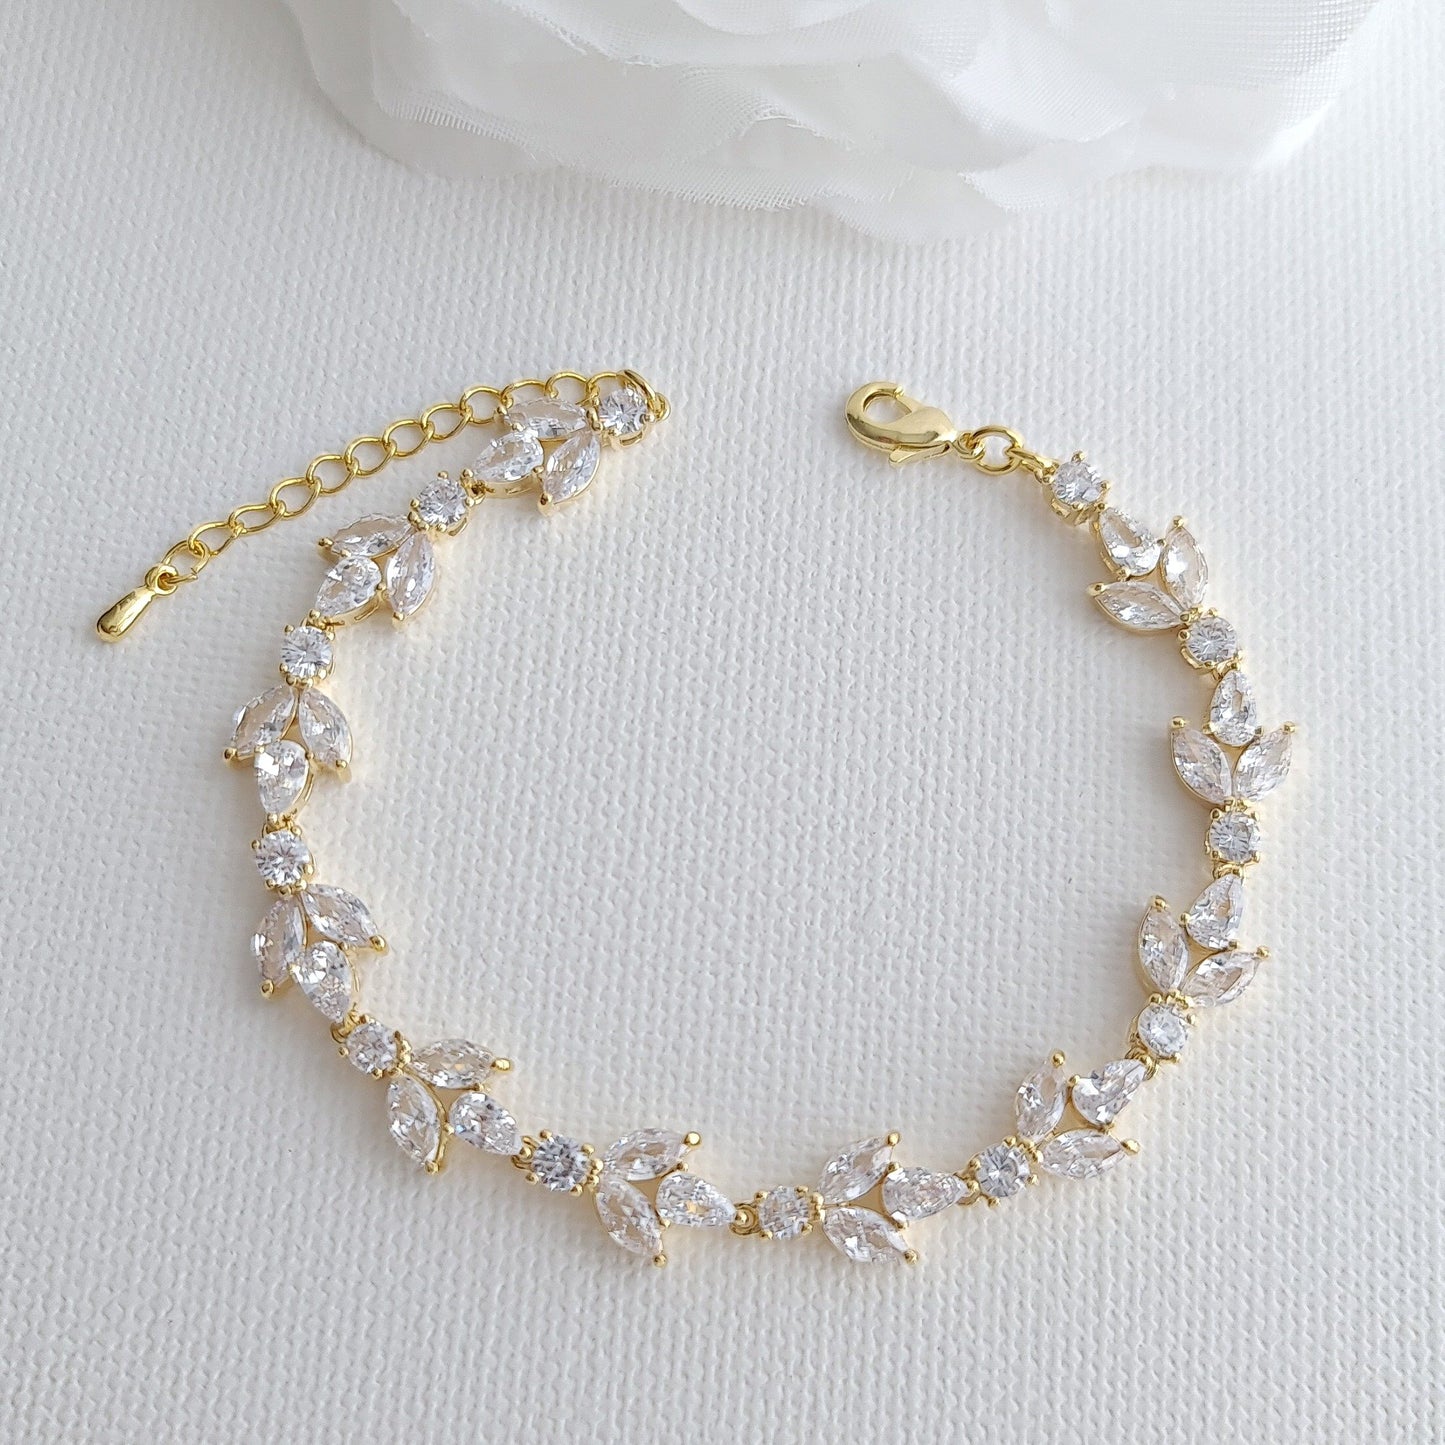 Rose Gold Bride Bracelet for Wedding Day-Anya - PoetryDesigns